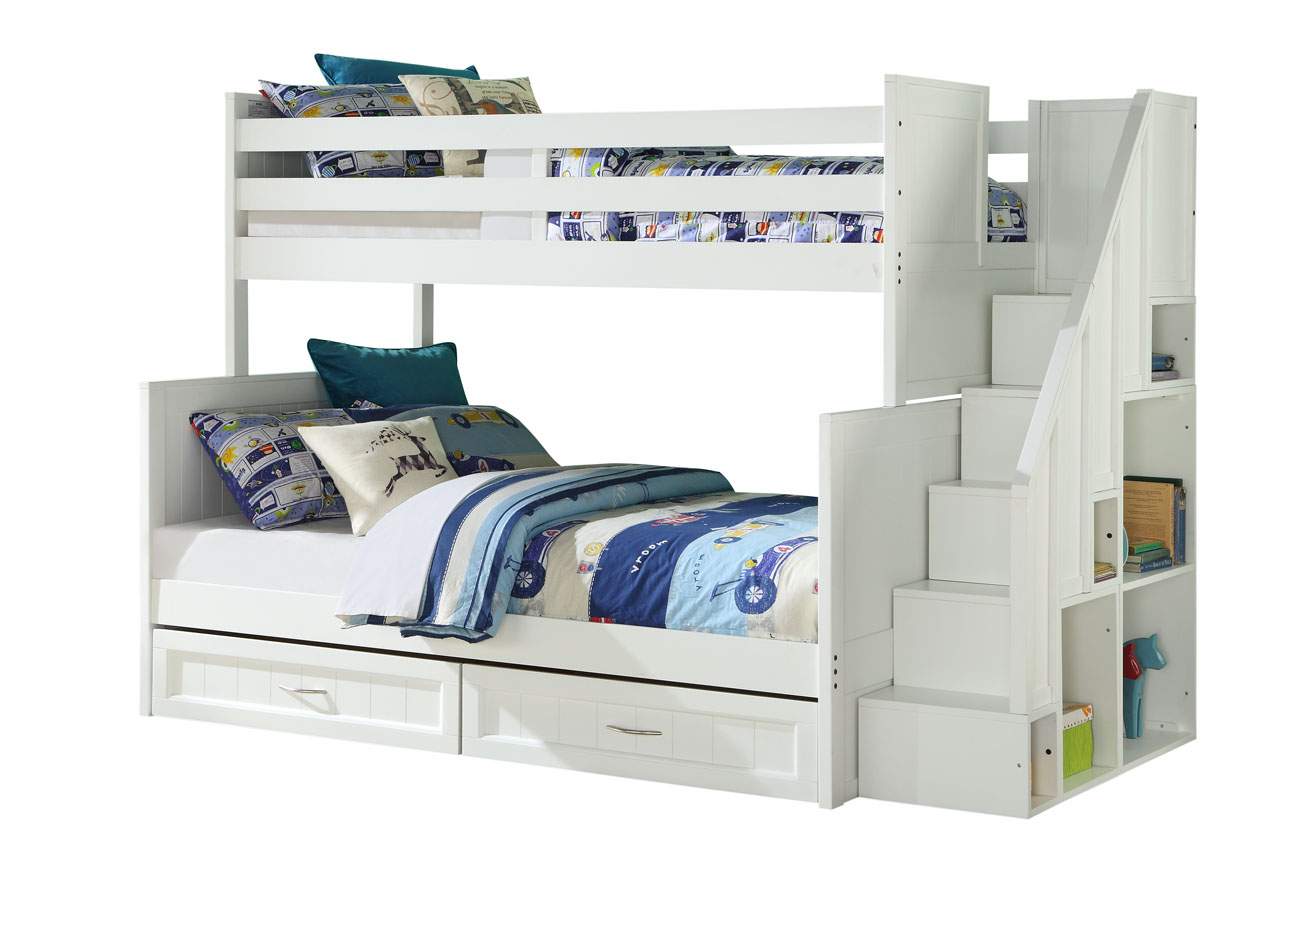 caramia bunk bed